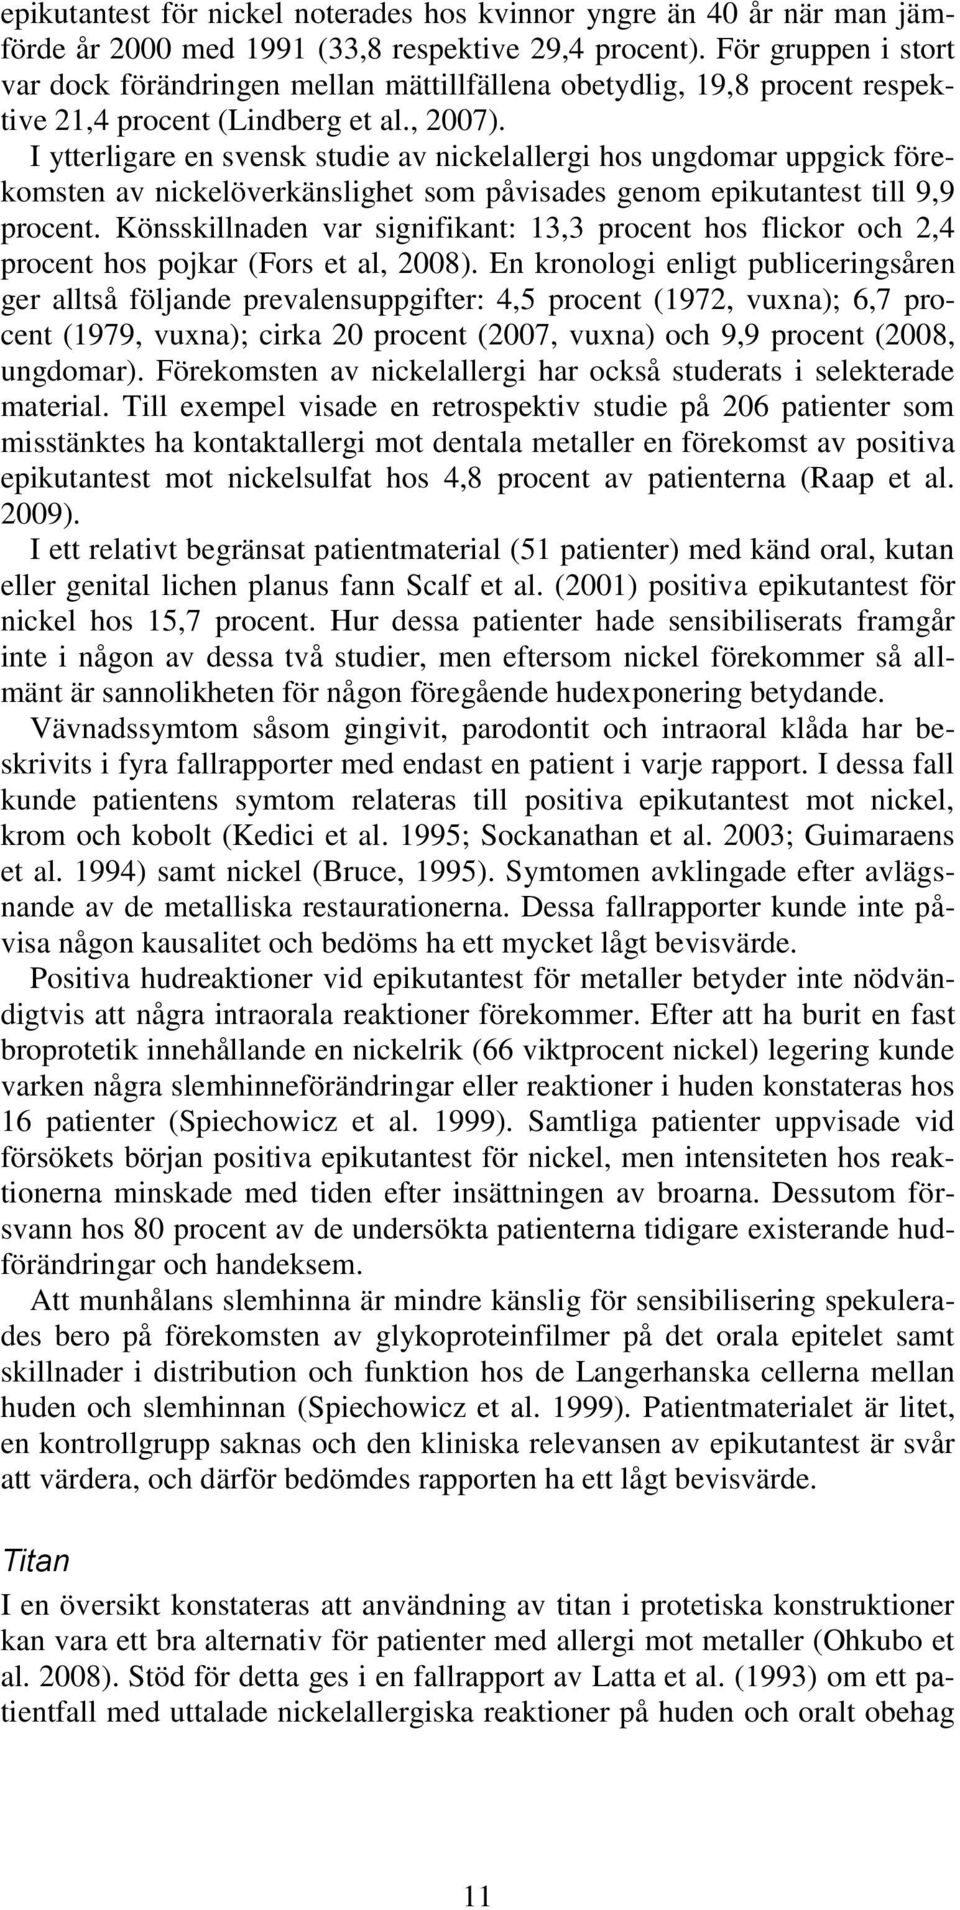 I ytterligare en svensk studie av nickelallergi hos ungdomar uppgick förekomsten av nickelöverkänslighet som påvisades genom epikutantest till 9,9 procent.